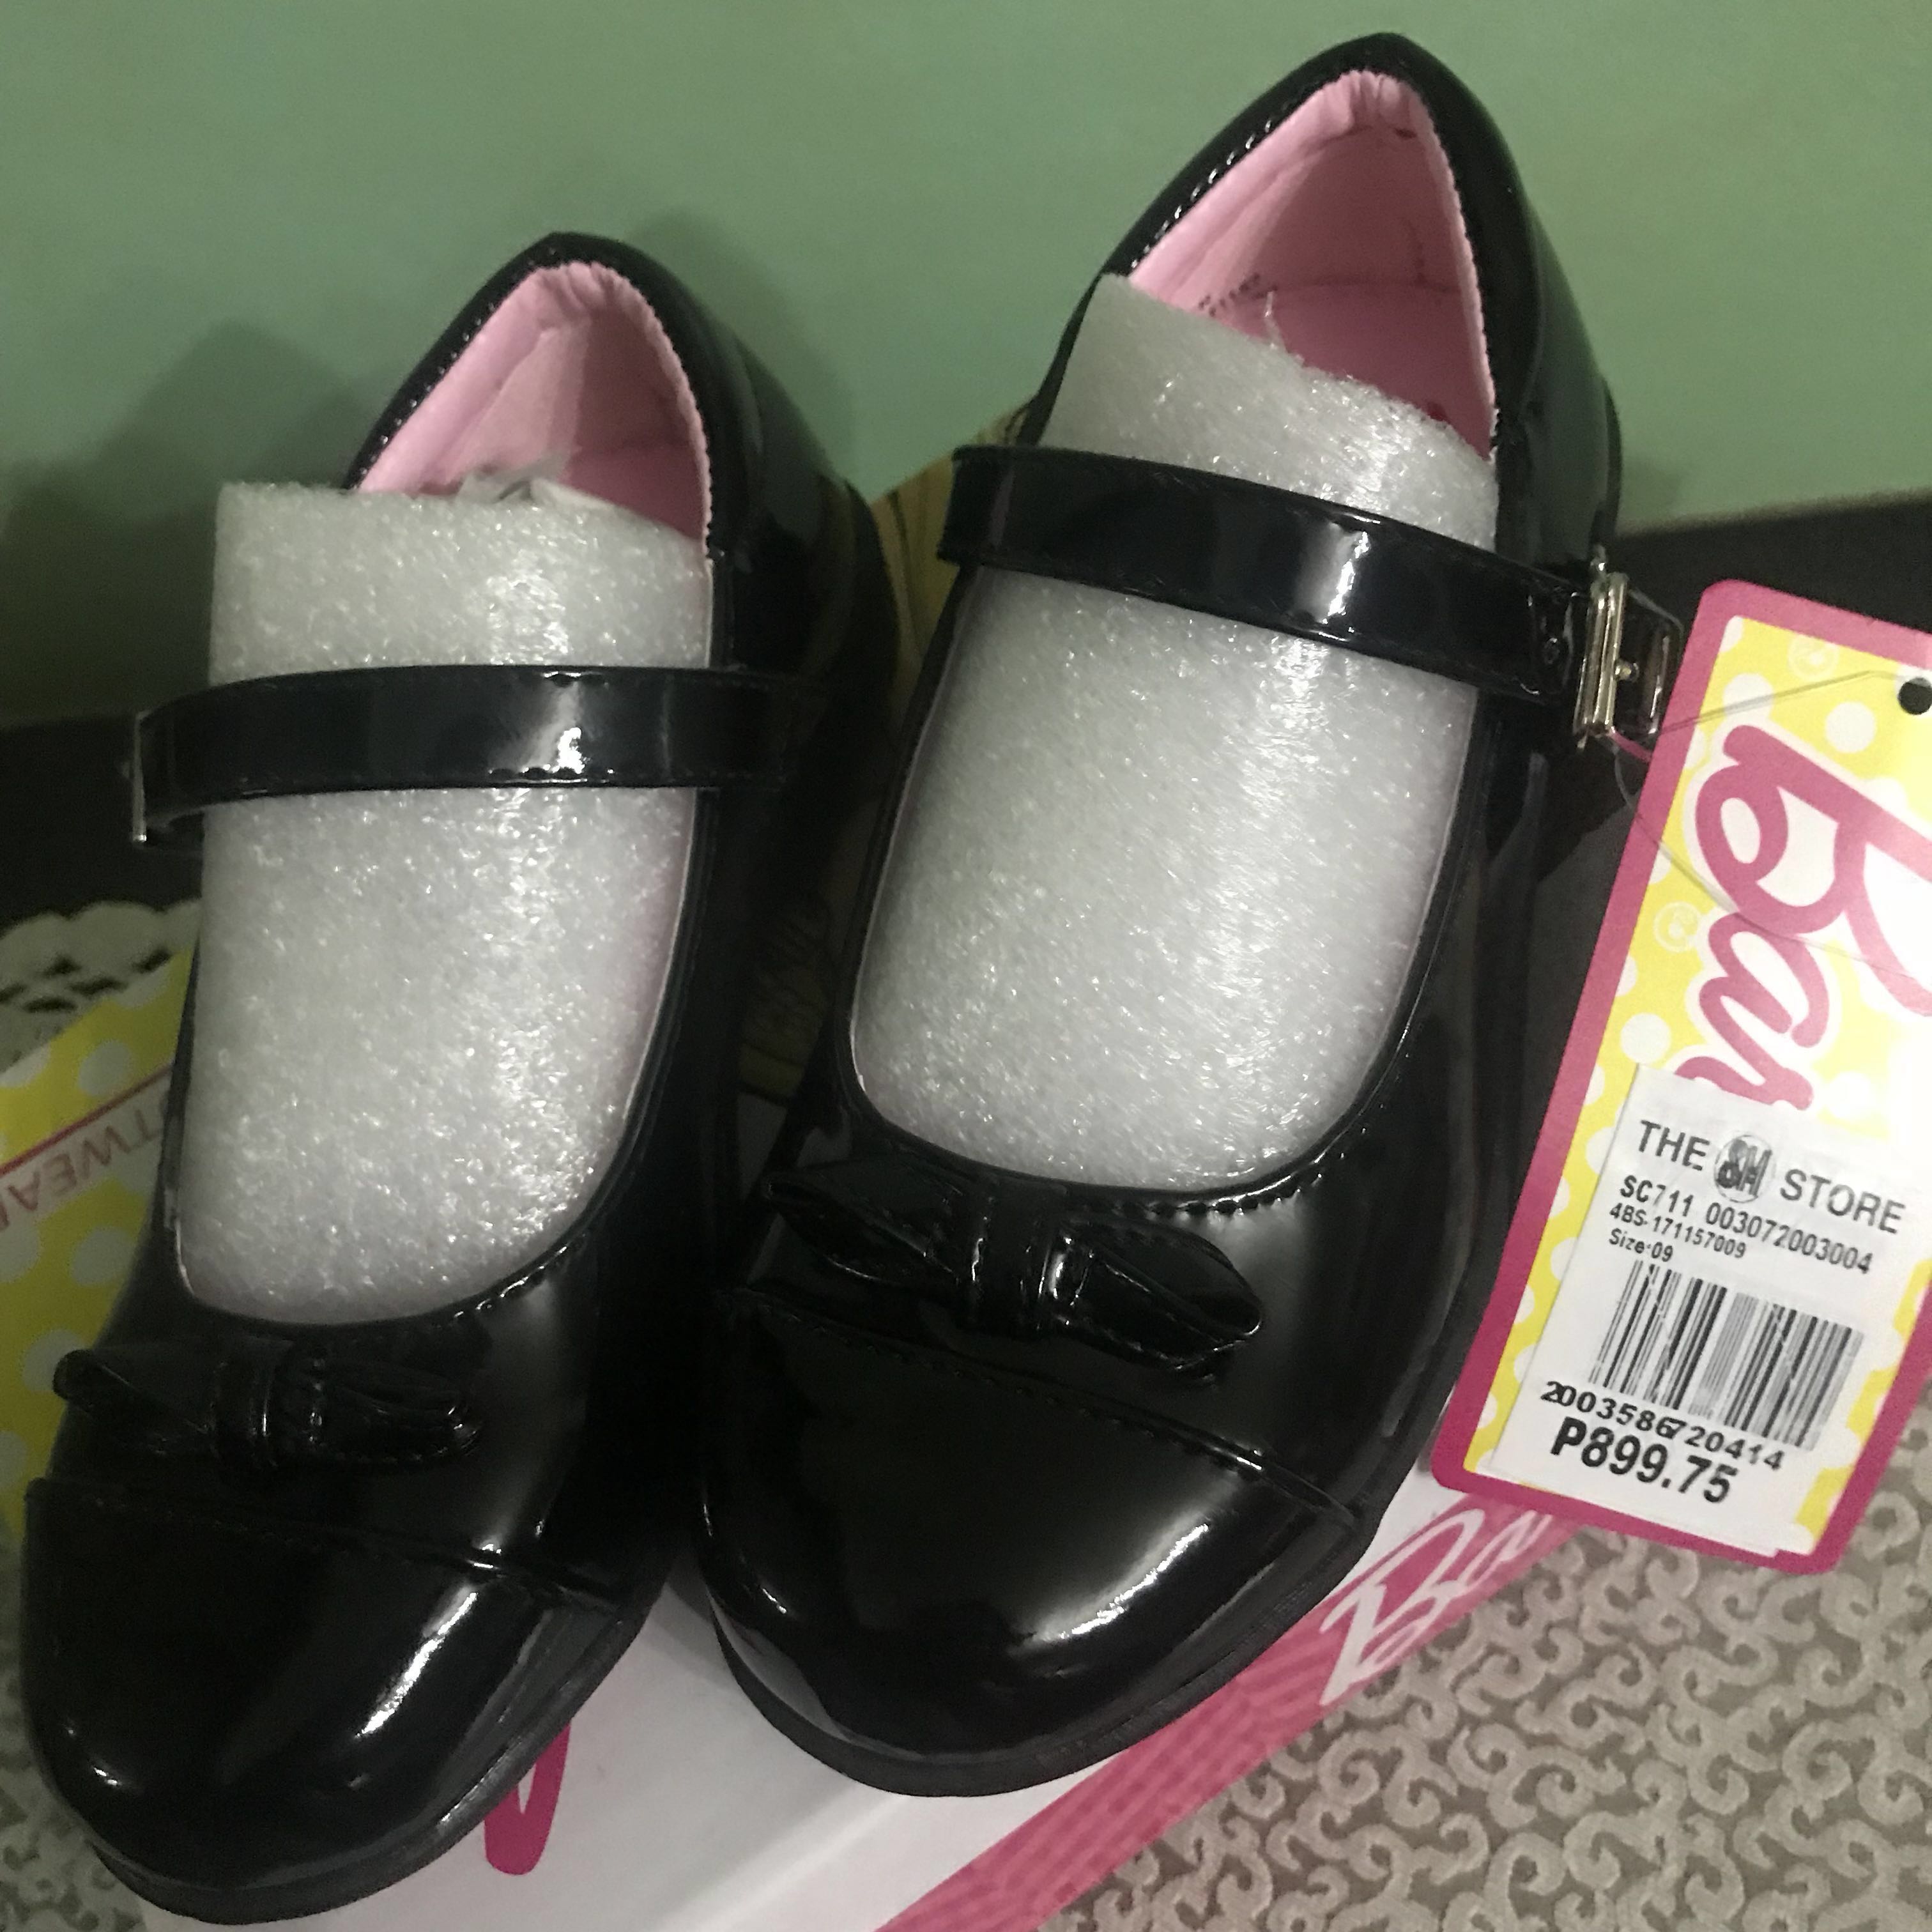 black barbie shoes